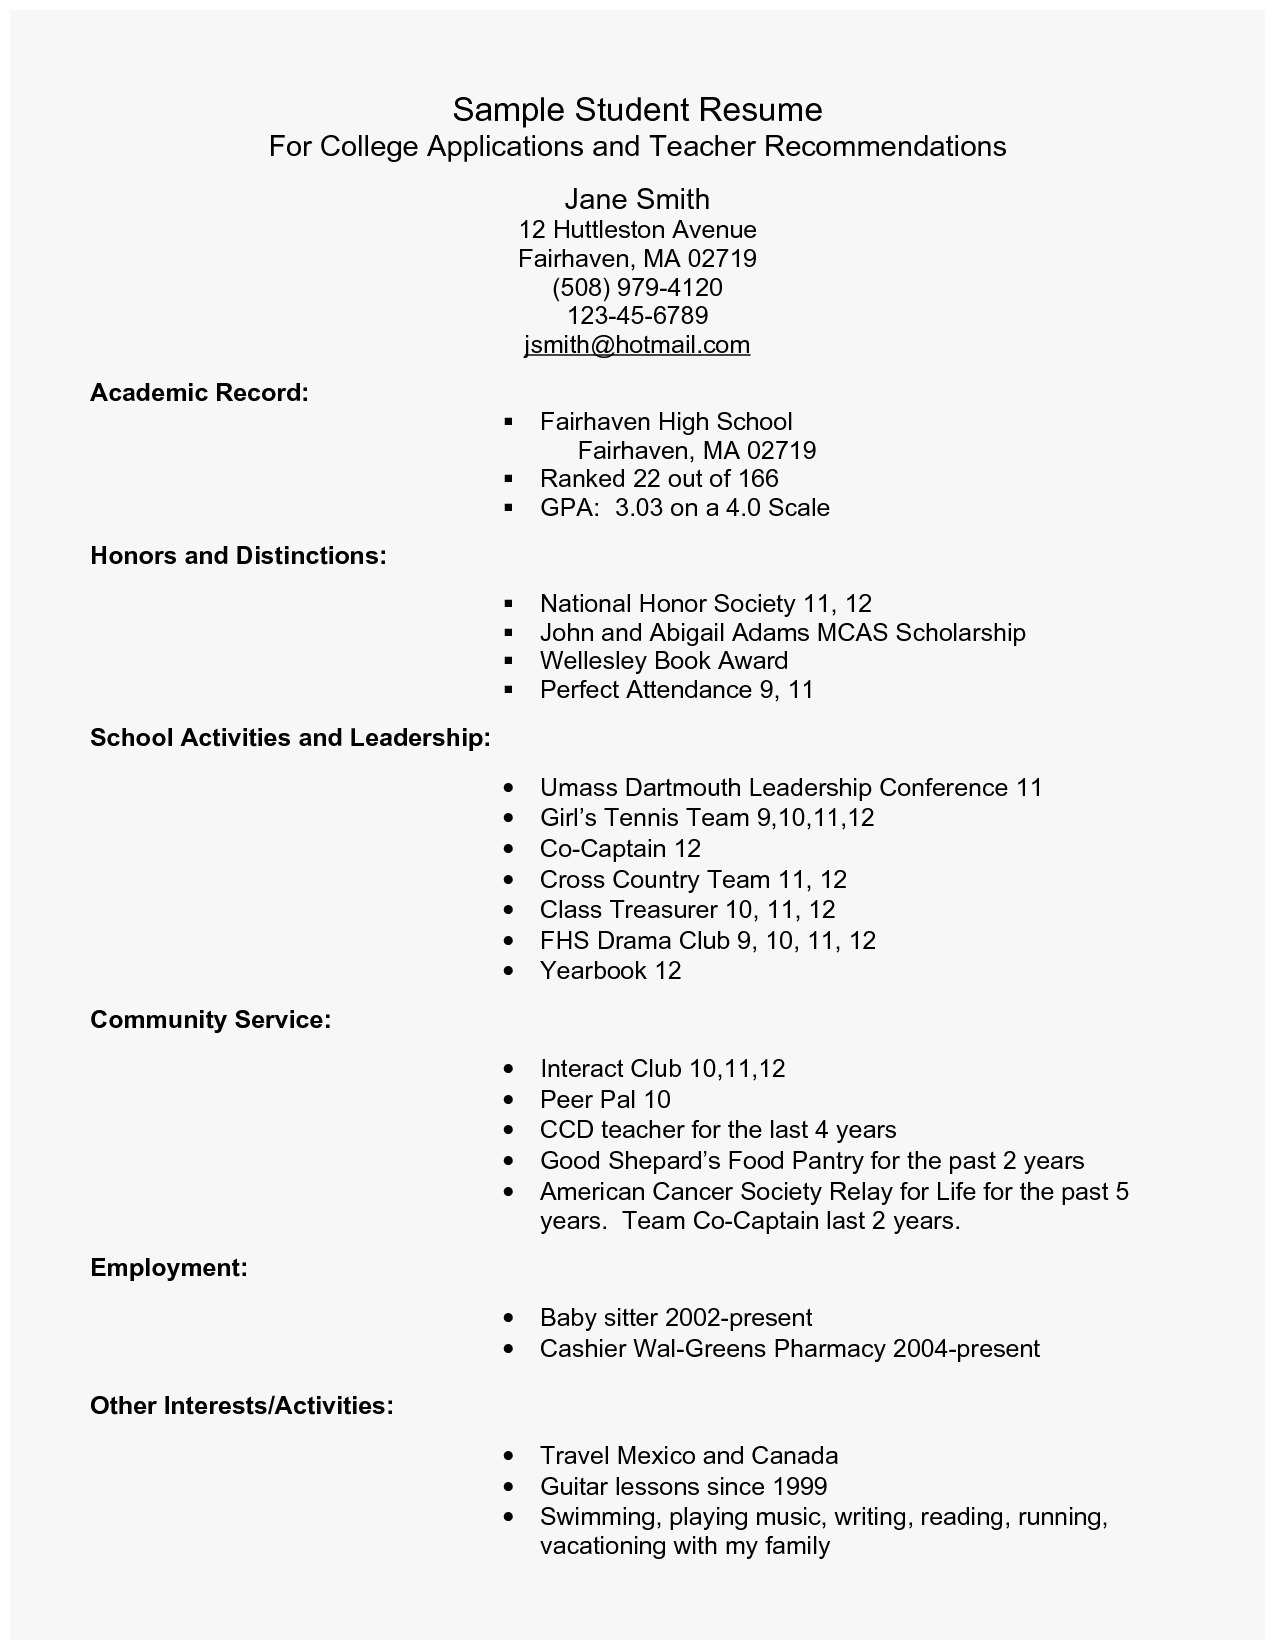 How To Fill Out A Resume How To Fill Out A Resume New How To Fill Out A Resume For High School Students Resume Of How To Fill Out A Resume how to fill out a resume|wikiresume.com